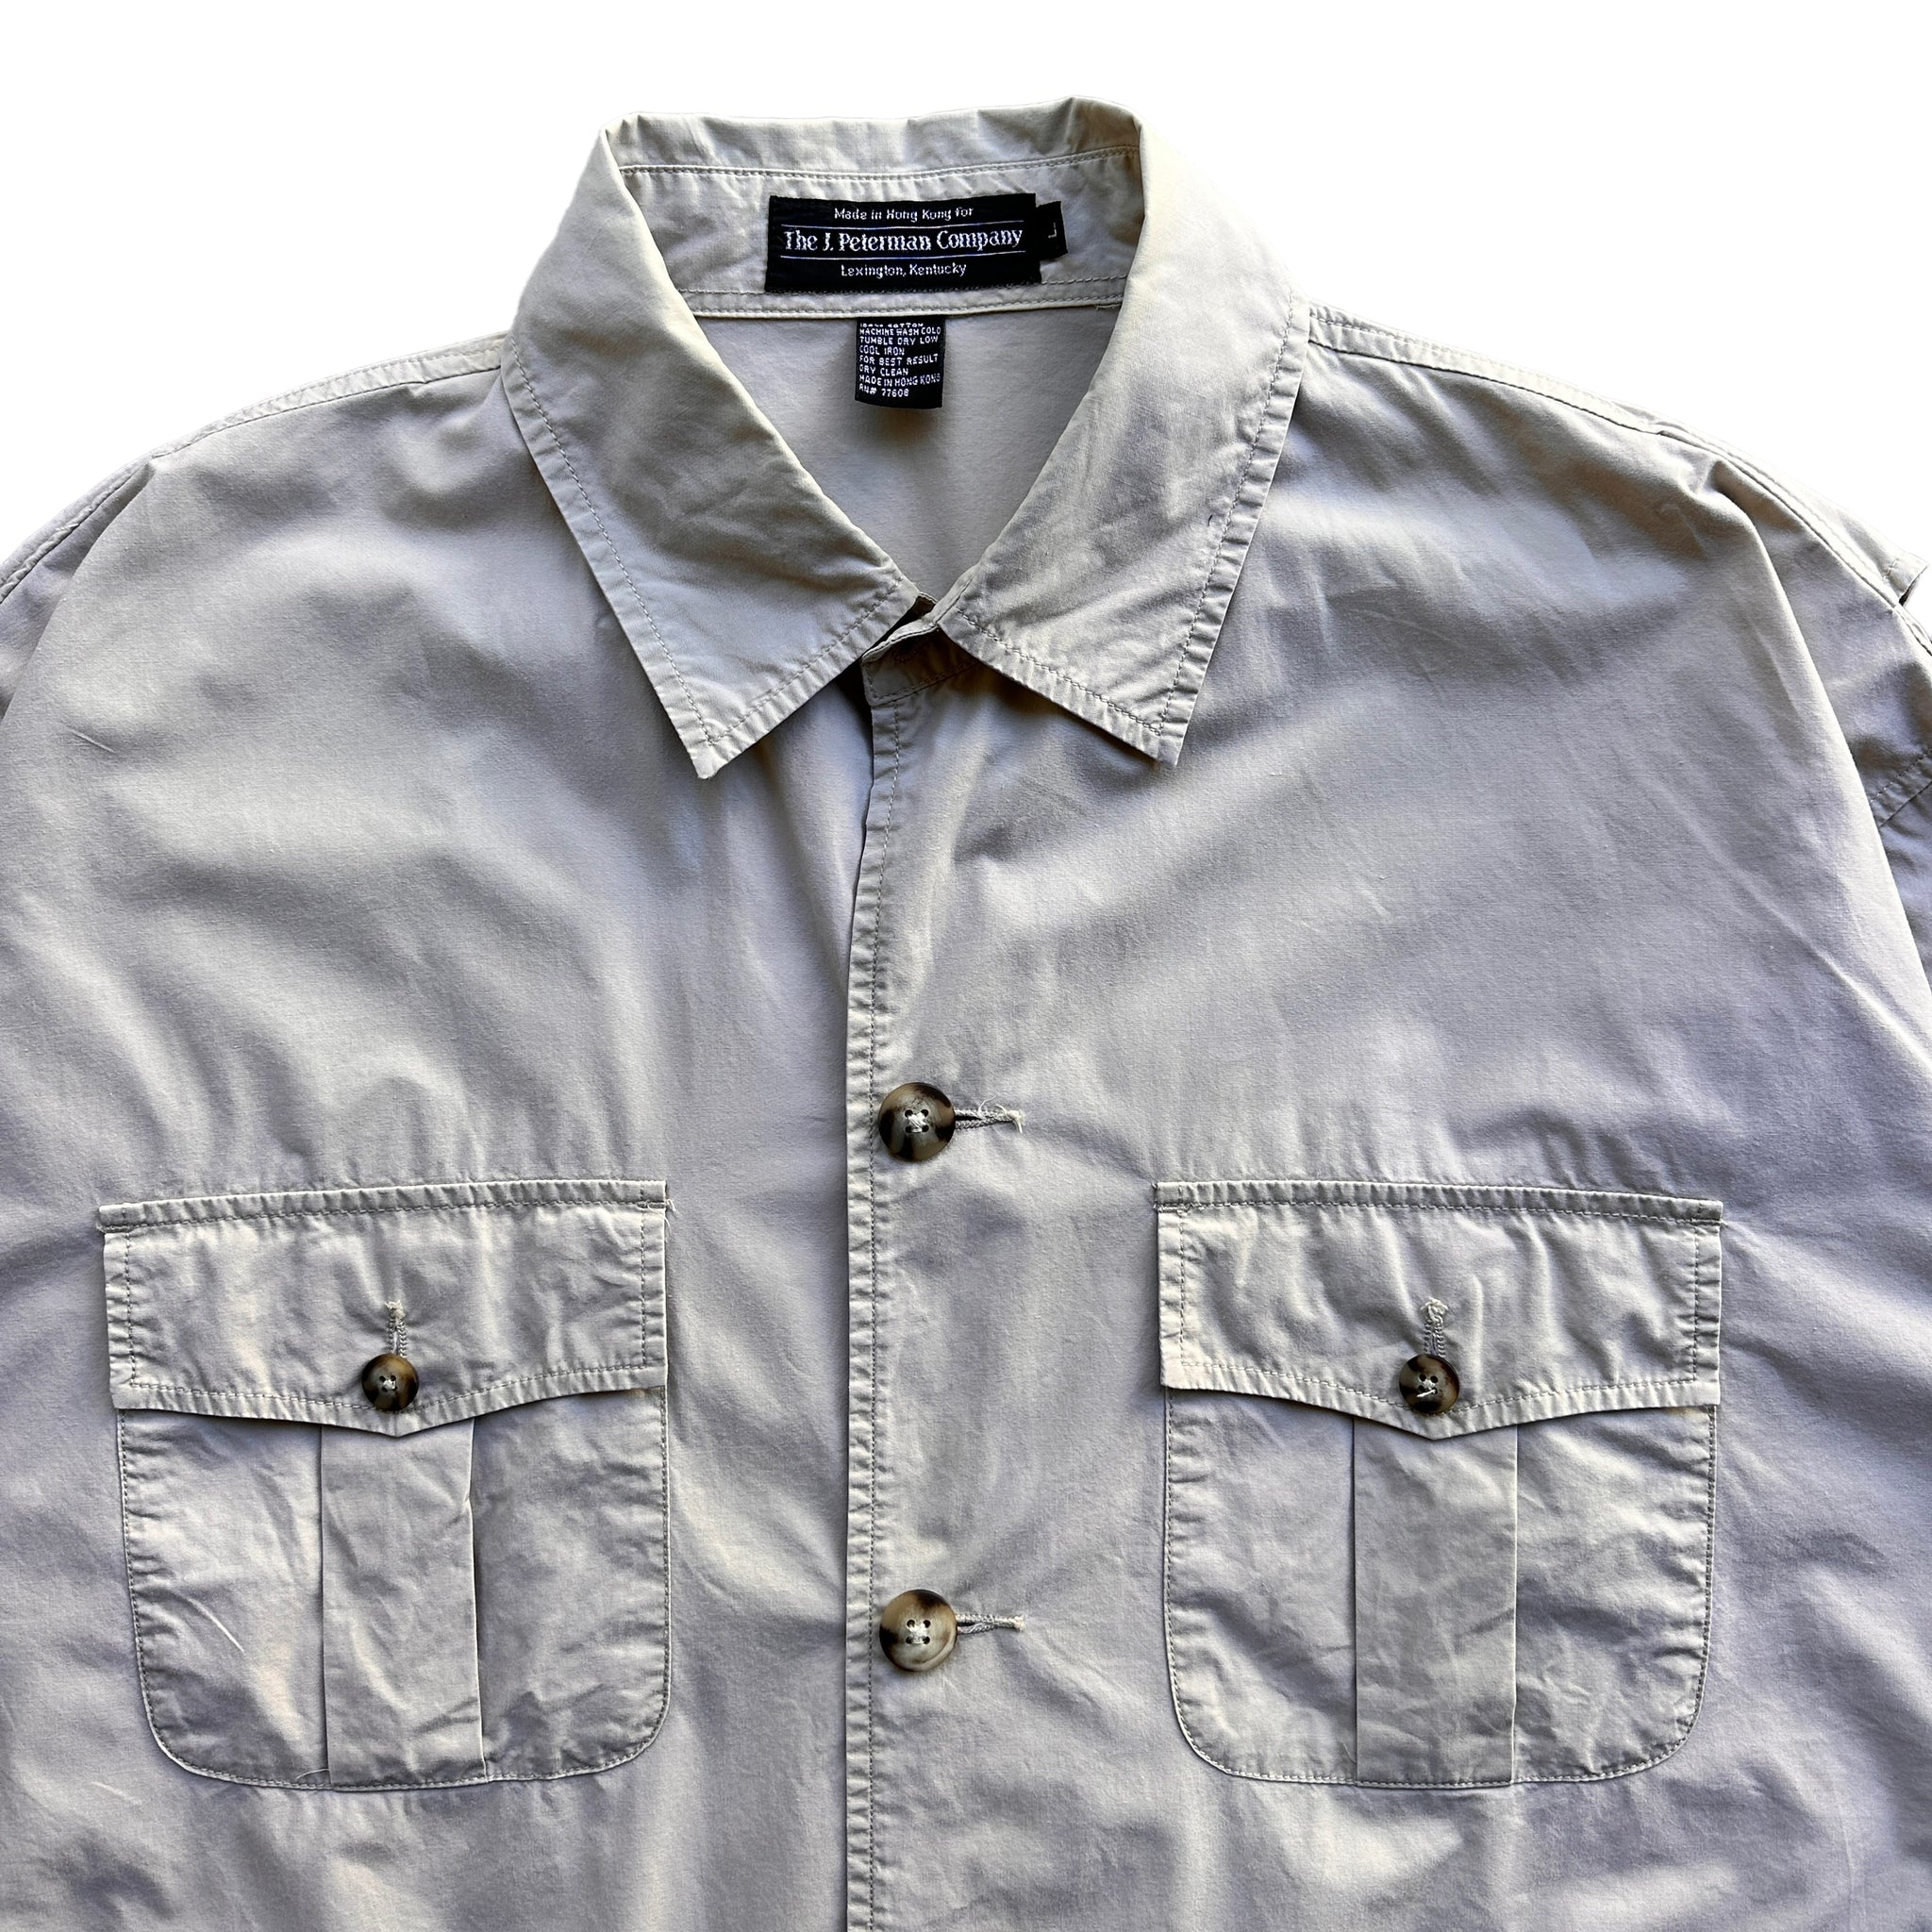 J Peterman light cotton safari shirt large